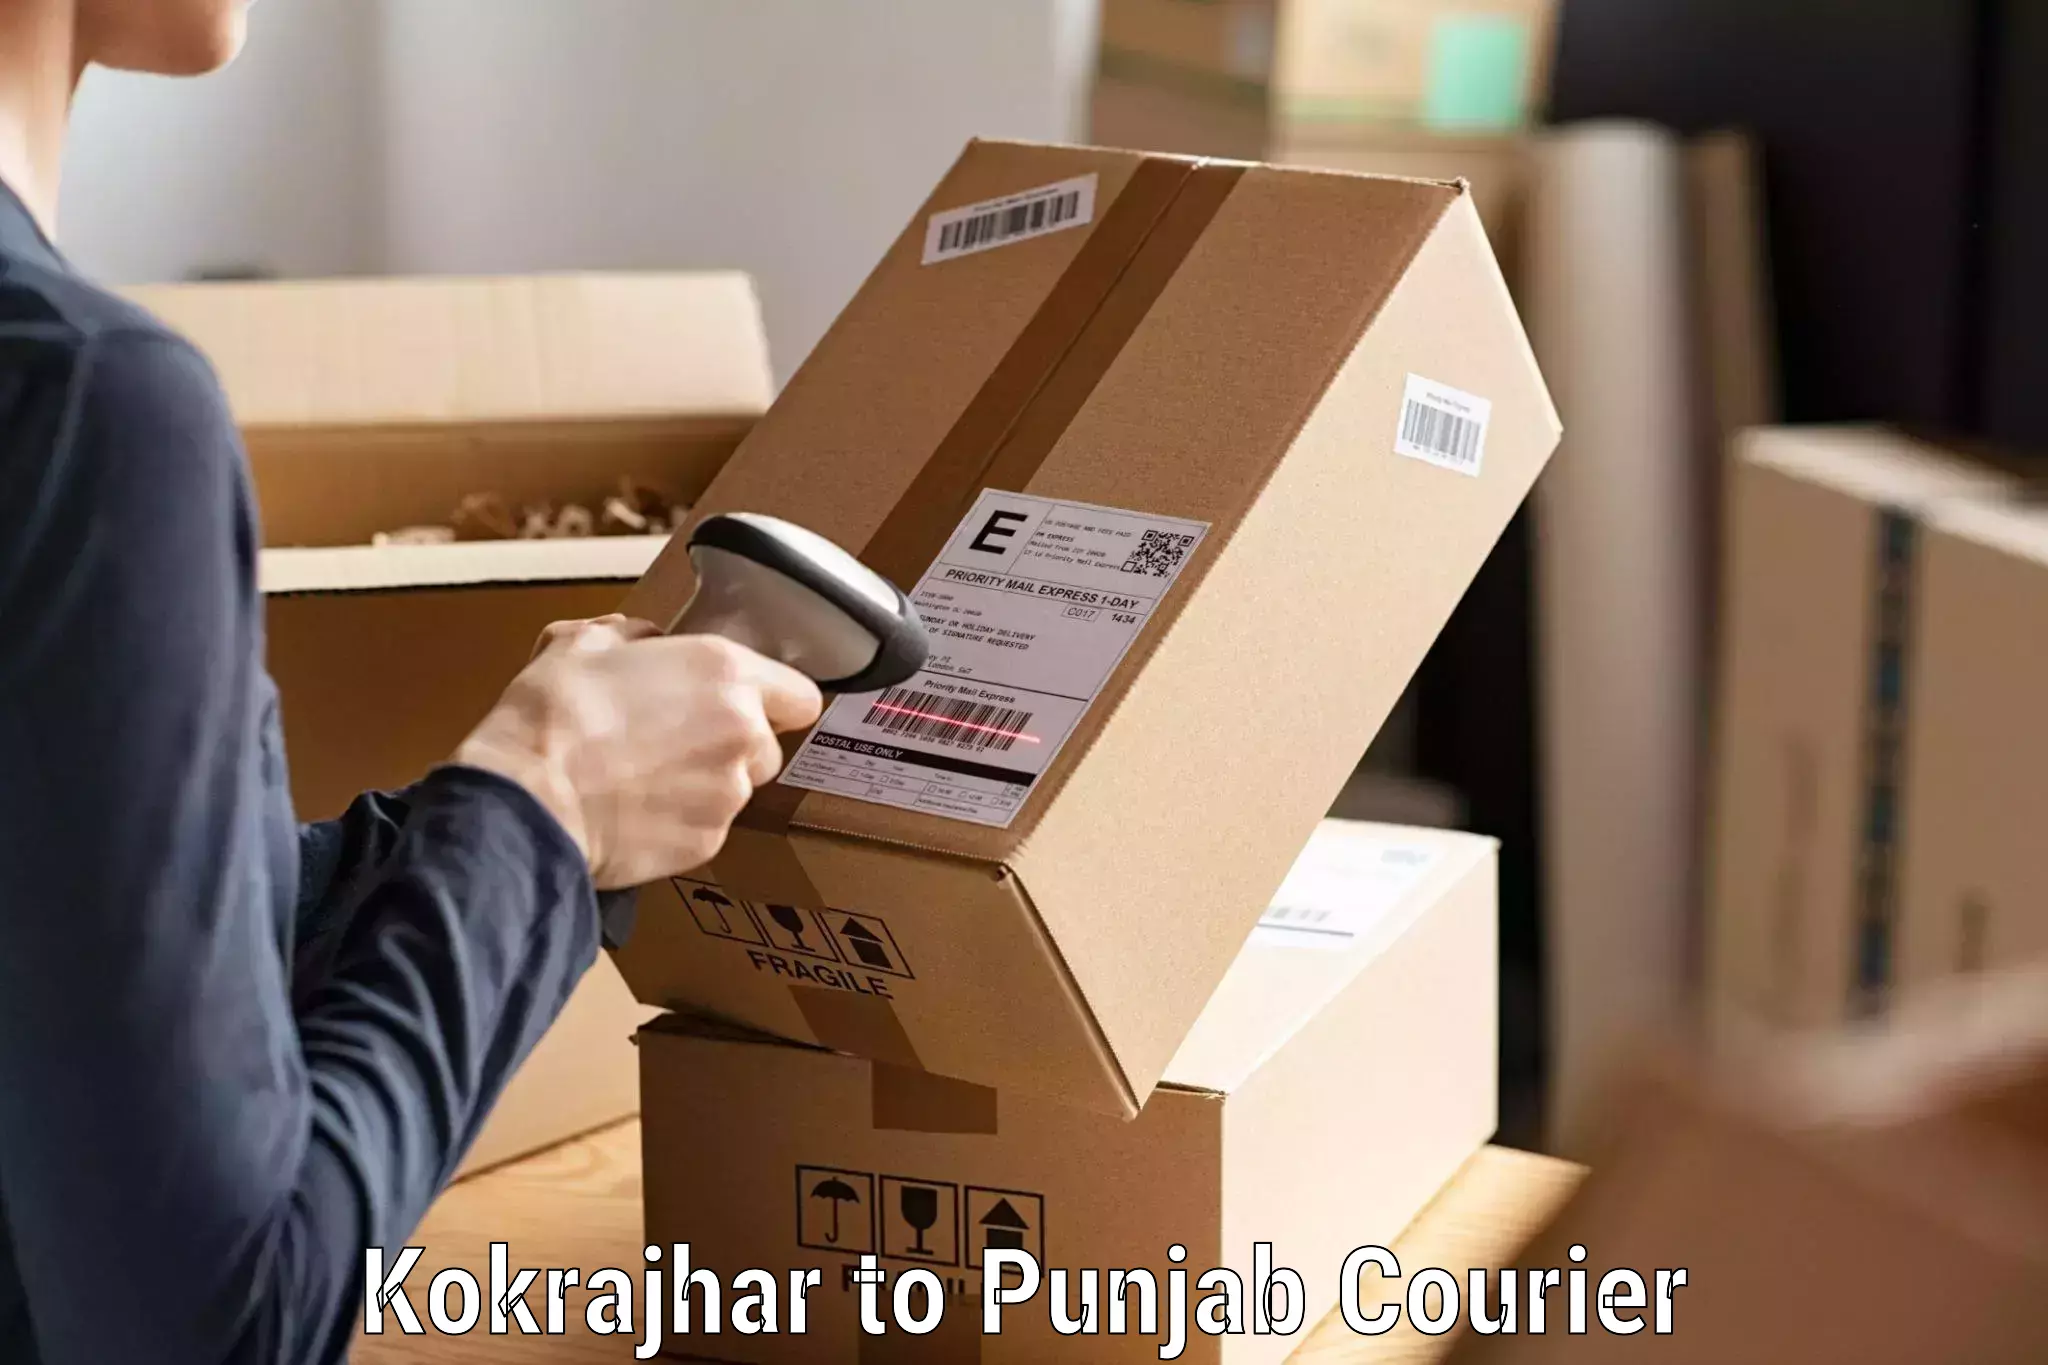 Efficient order fulfillment Kokrajhar to Amritsar